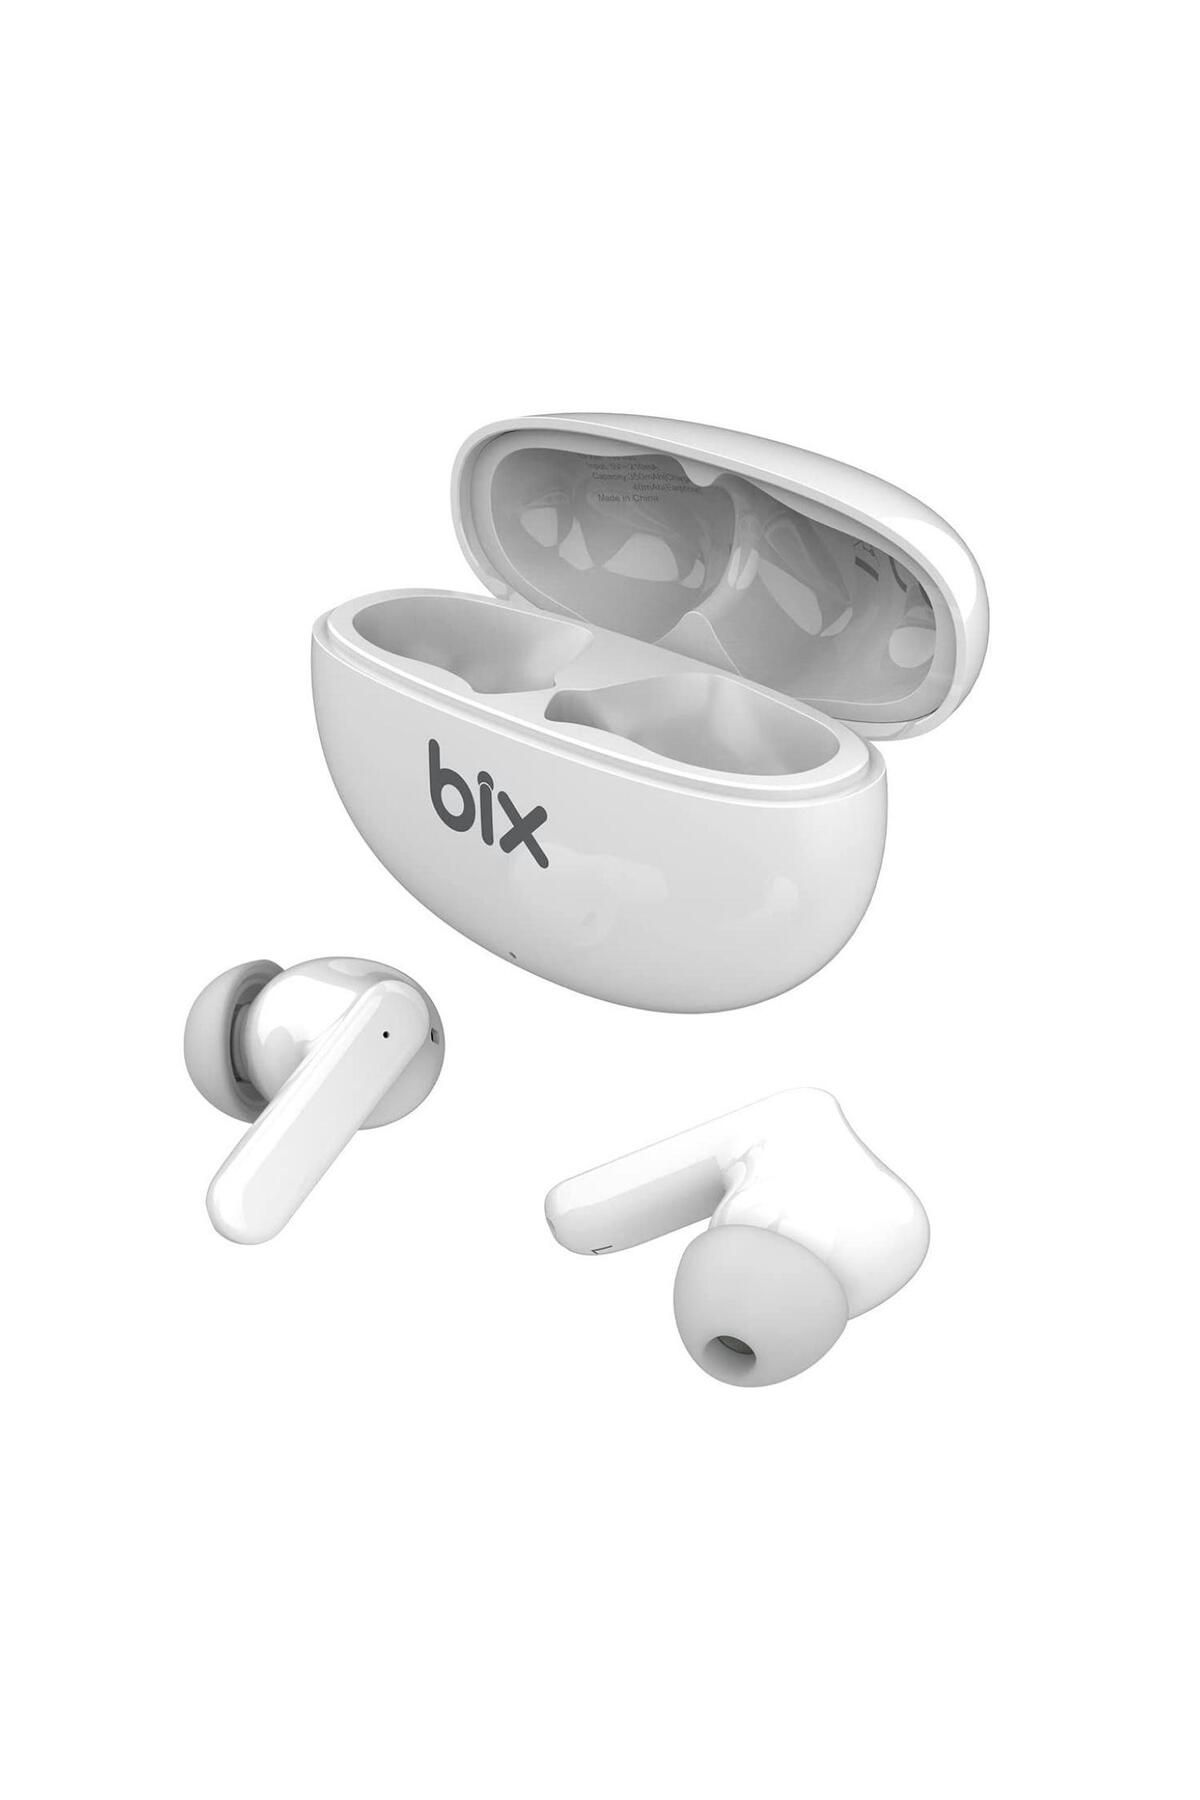 Bix X1Anc Soundcraft Enc Çağrı VeAktif Gürültü Önleyici Bluetooth 5.2 Ipx4 Uyumlu Kulak Içi Tws Kulaklık